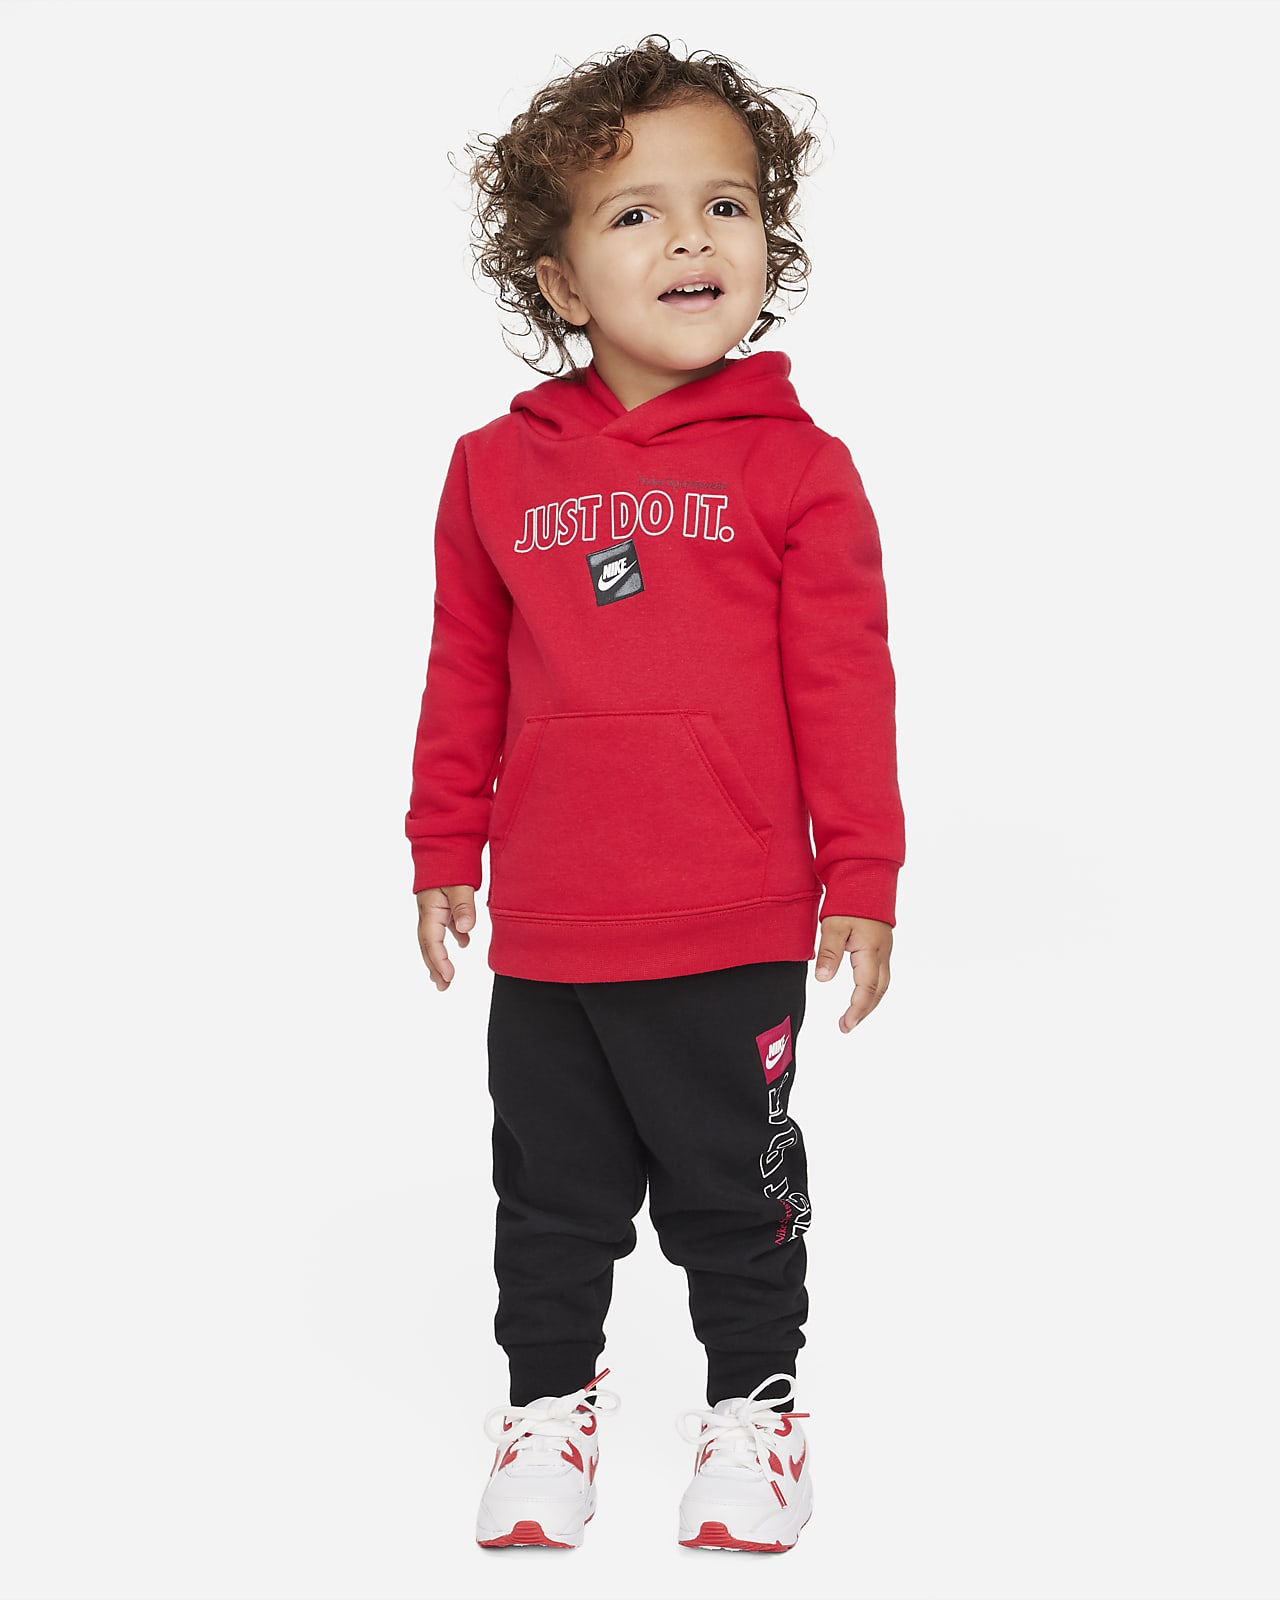 Absoluto Remolque Pinchazo Conjunto de sudadera con capucha y pantalones para bebé (de 12 a 24 meses)  Nike Sportswear. Nike.com